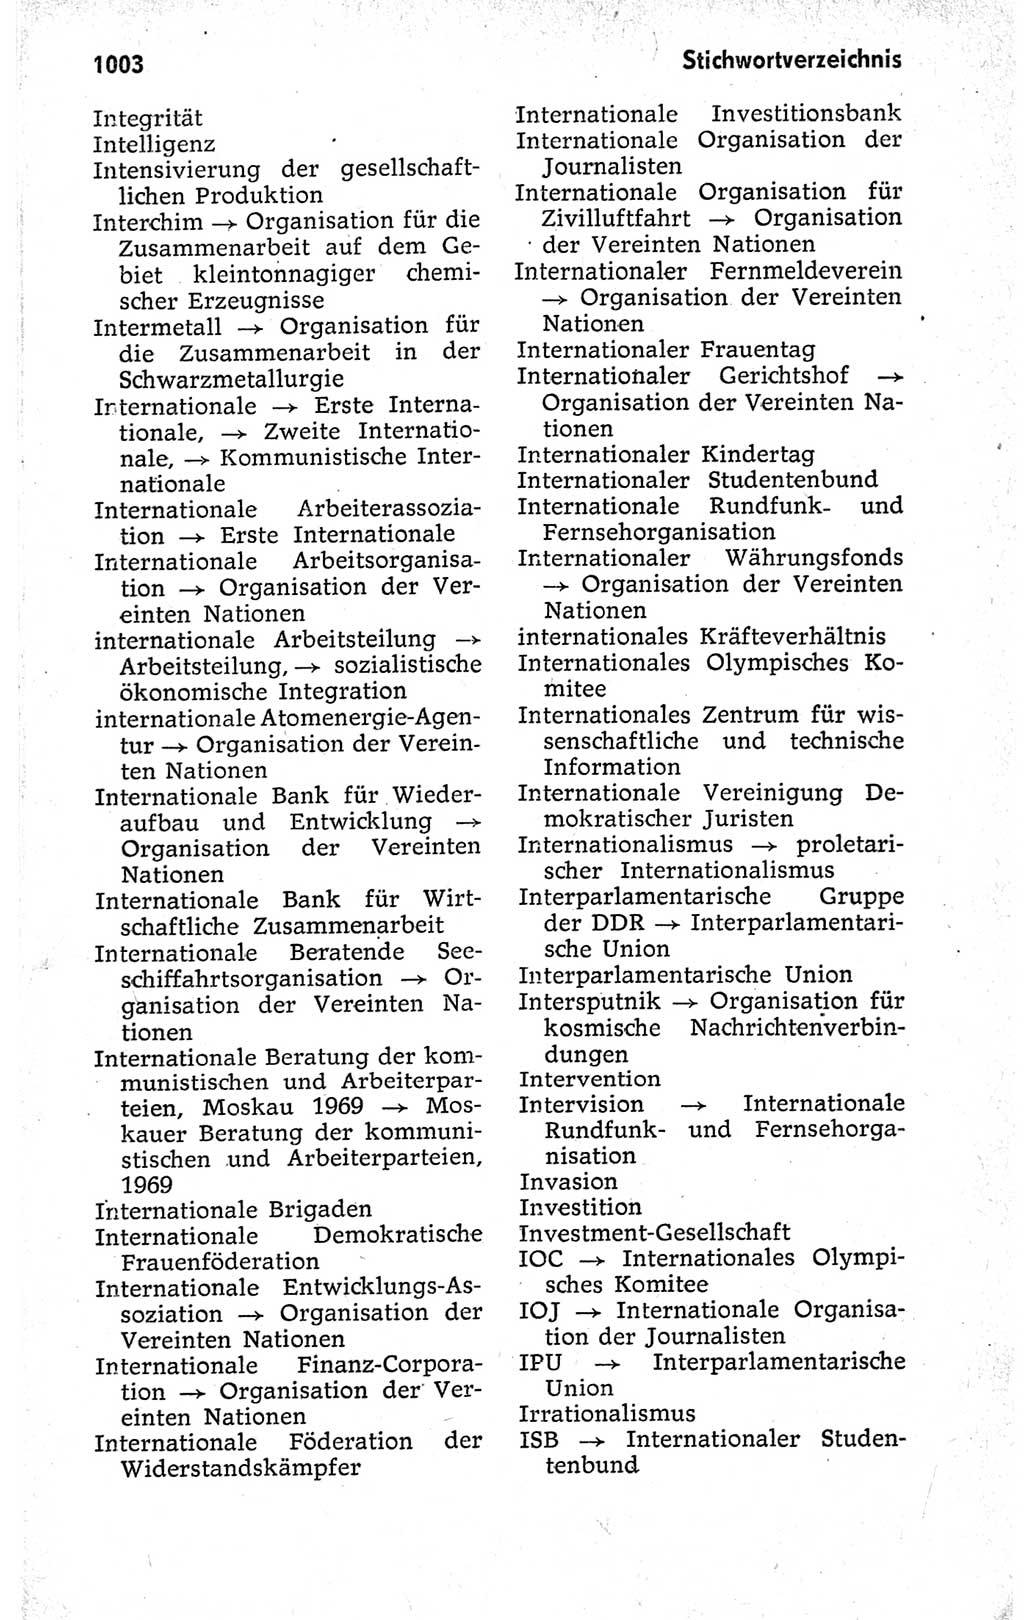 Kleines politisches Wörterbuch [Deutsche Demokratische Republik (DDR)] 1973, Seite 1003 (Kl. pol. Wb. DDR 1973, S. 1003)